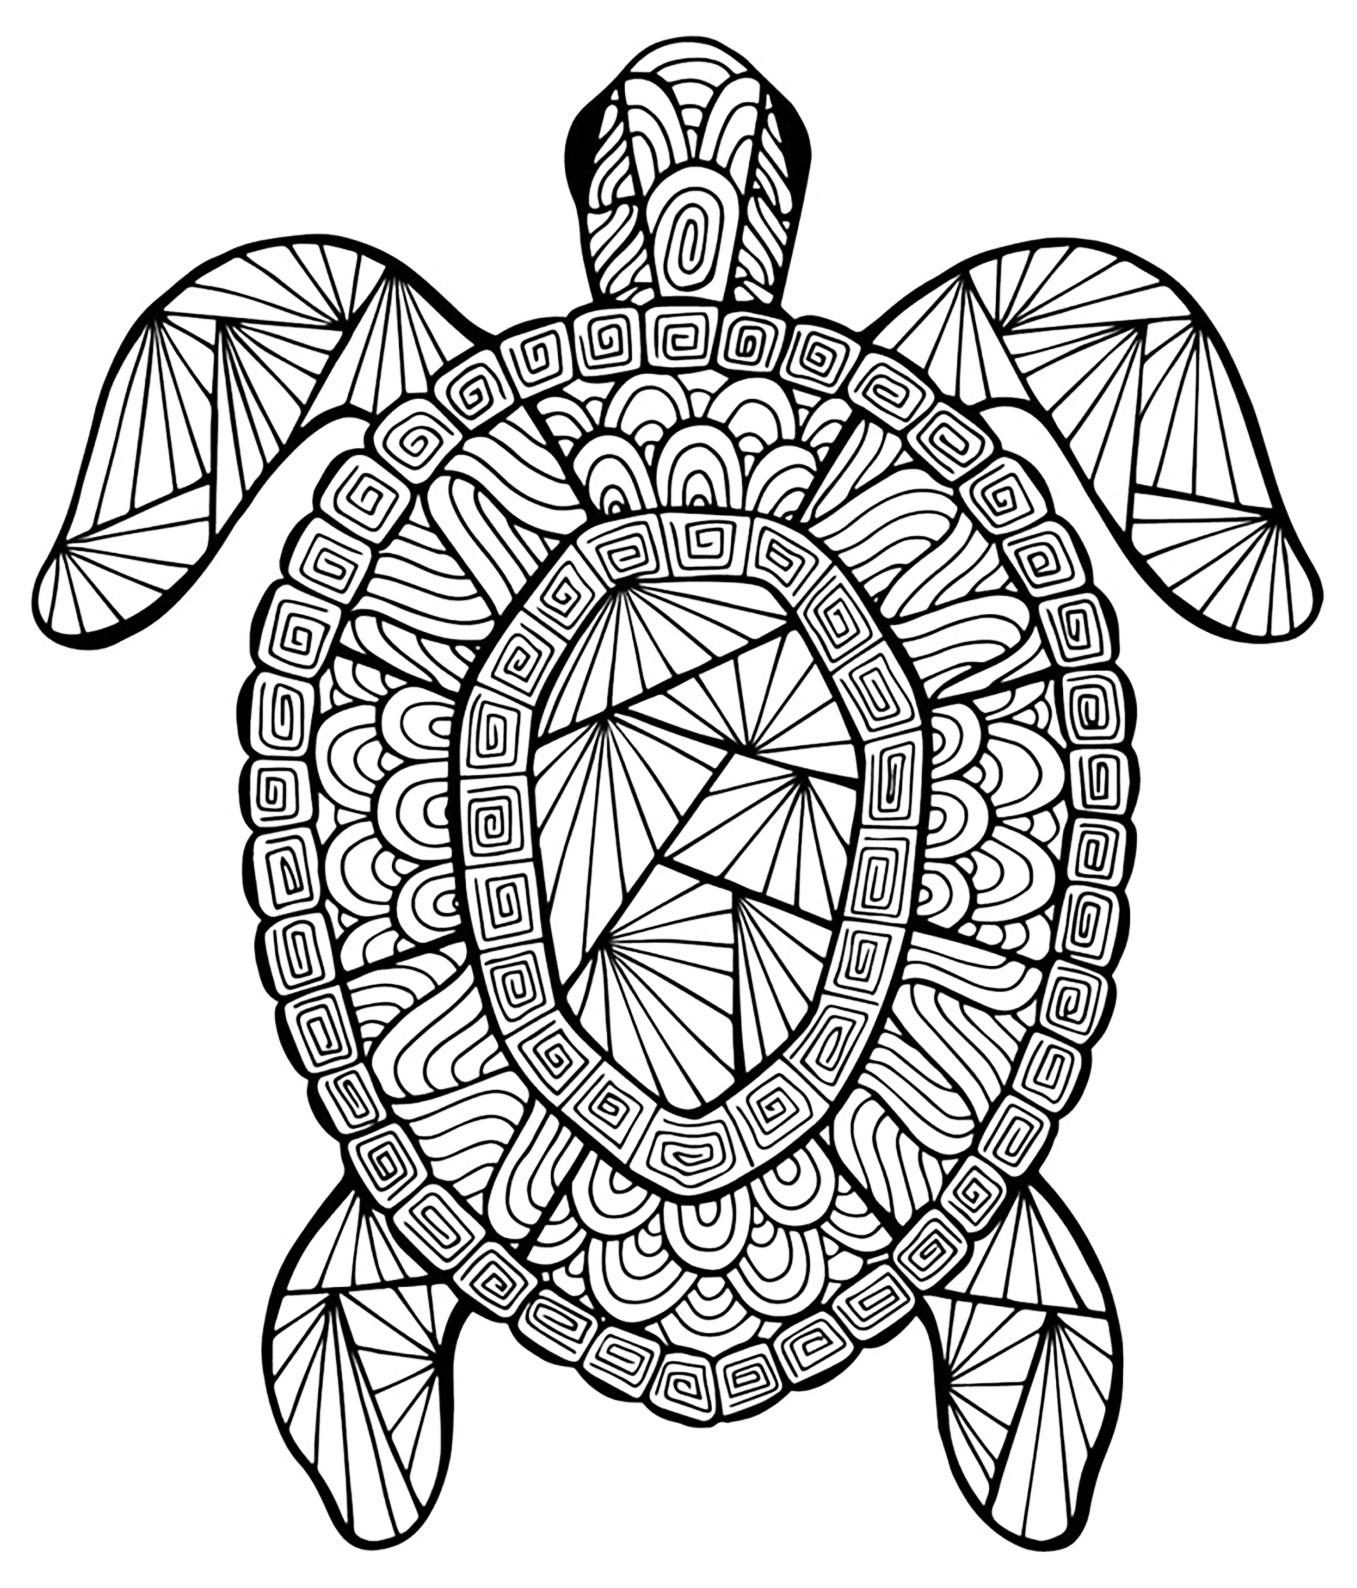 Una tortuga con diseños intrincados, para imprimir y colorear